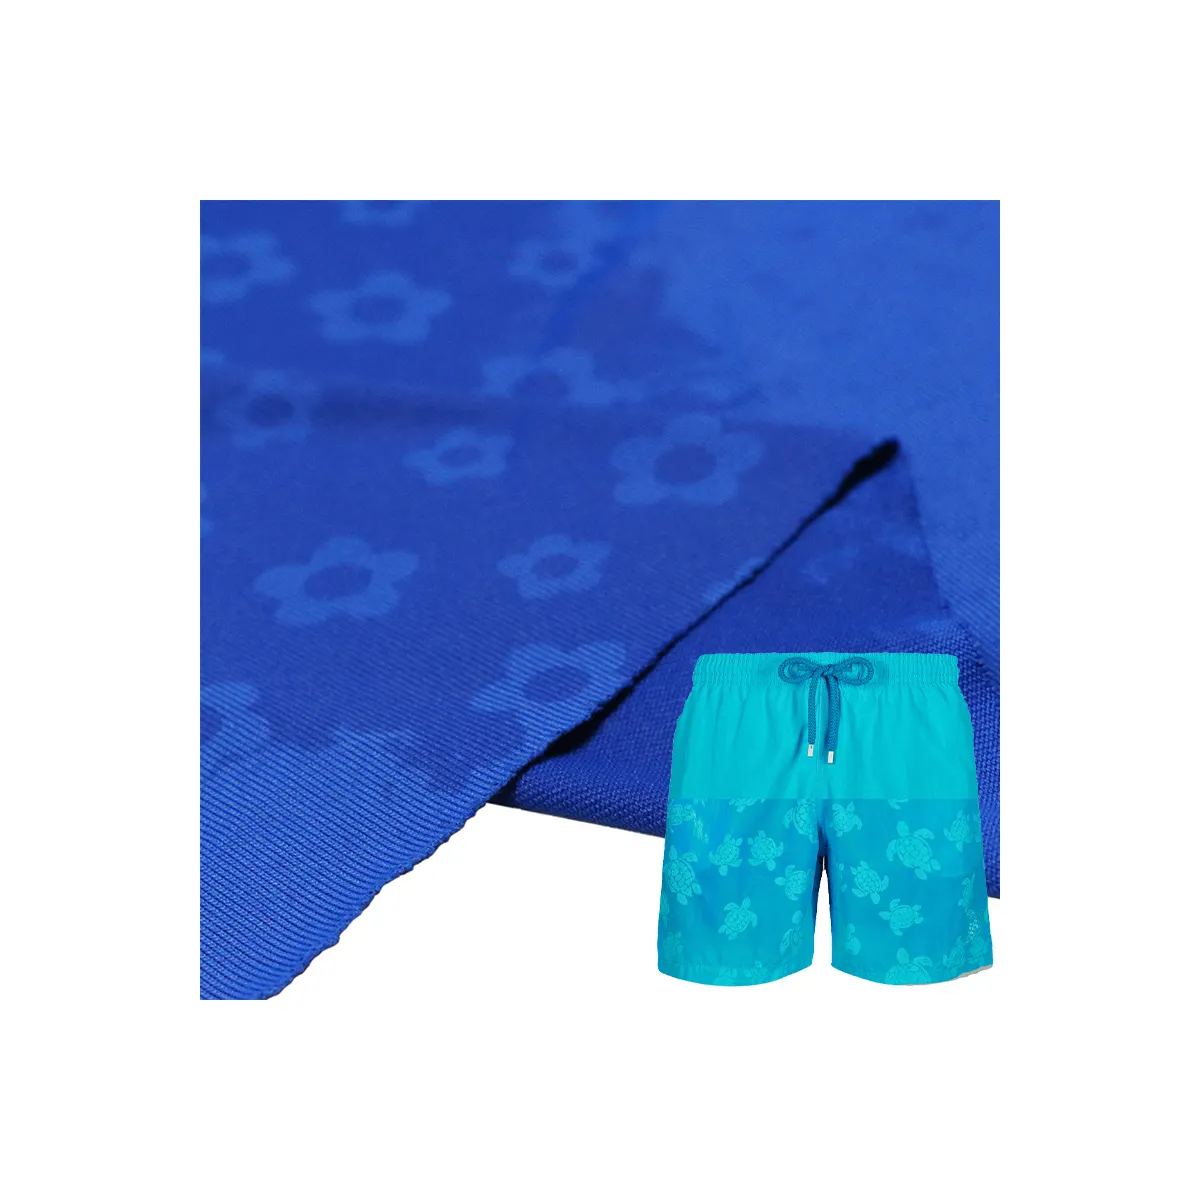 Marco de tracción con estampado activado por agua, tela que cambia de color y temperatura, para pantalones de playa